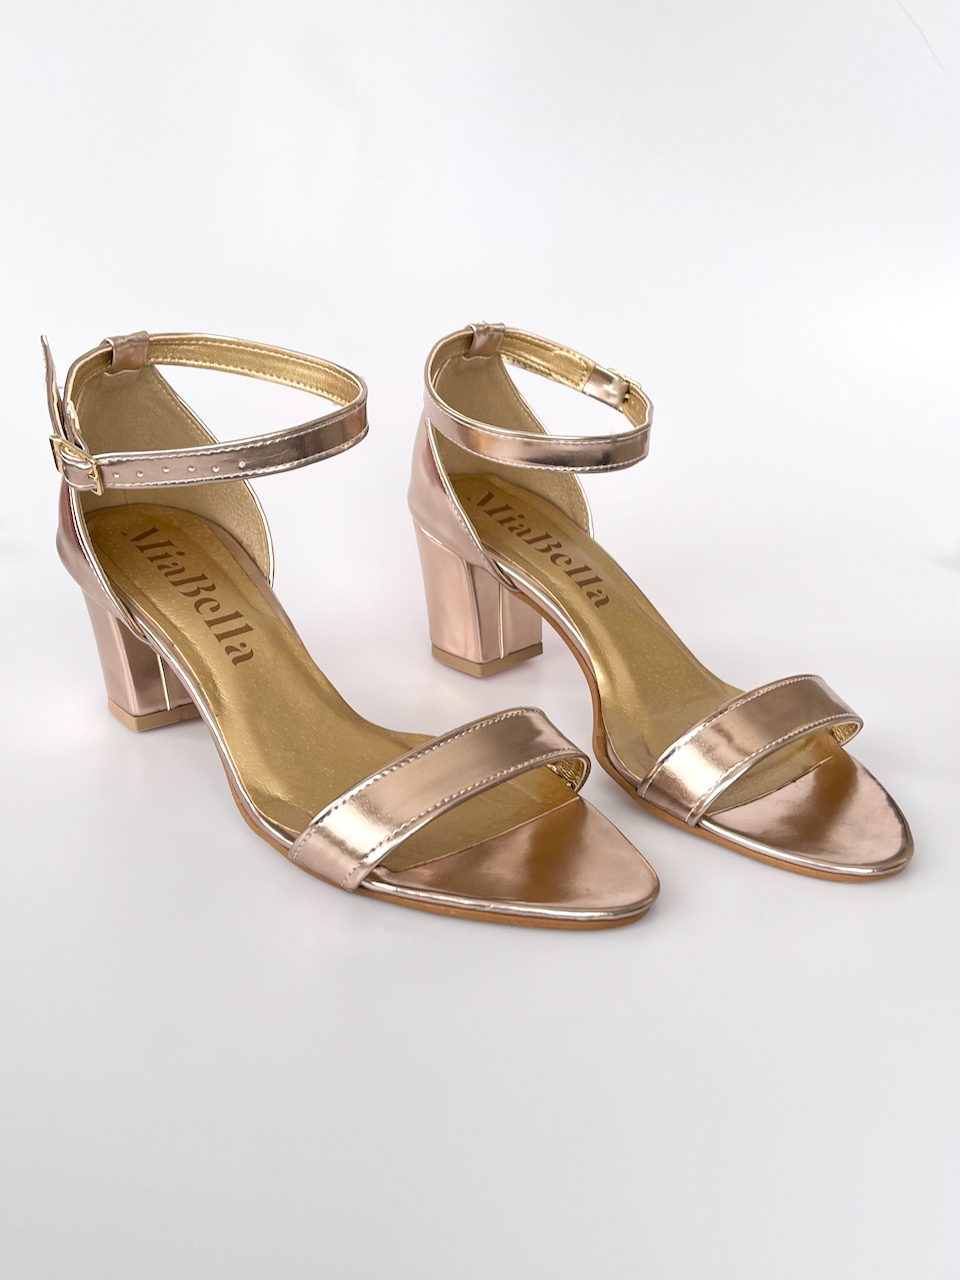 Rose-gold sandálky na podpatku 32 - stélka 19,5cm / obvod 18,5cm